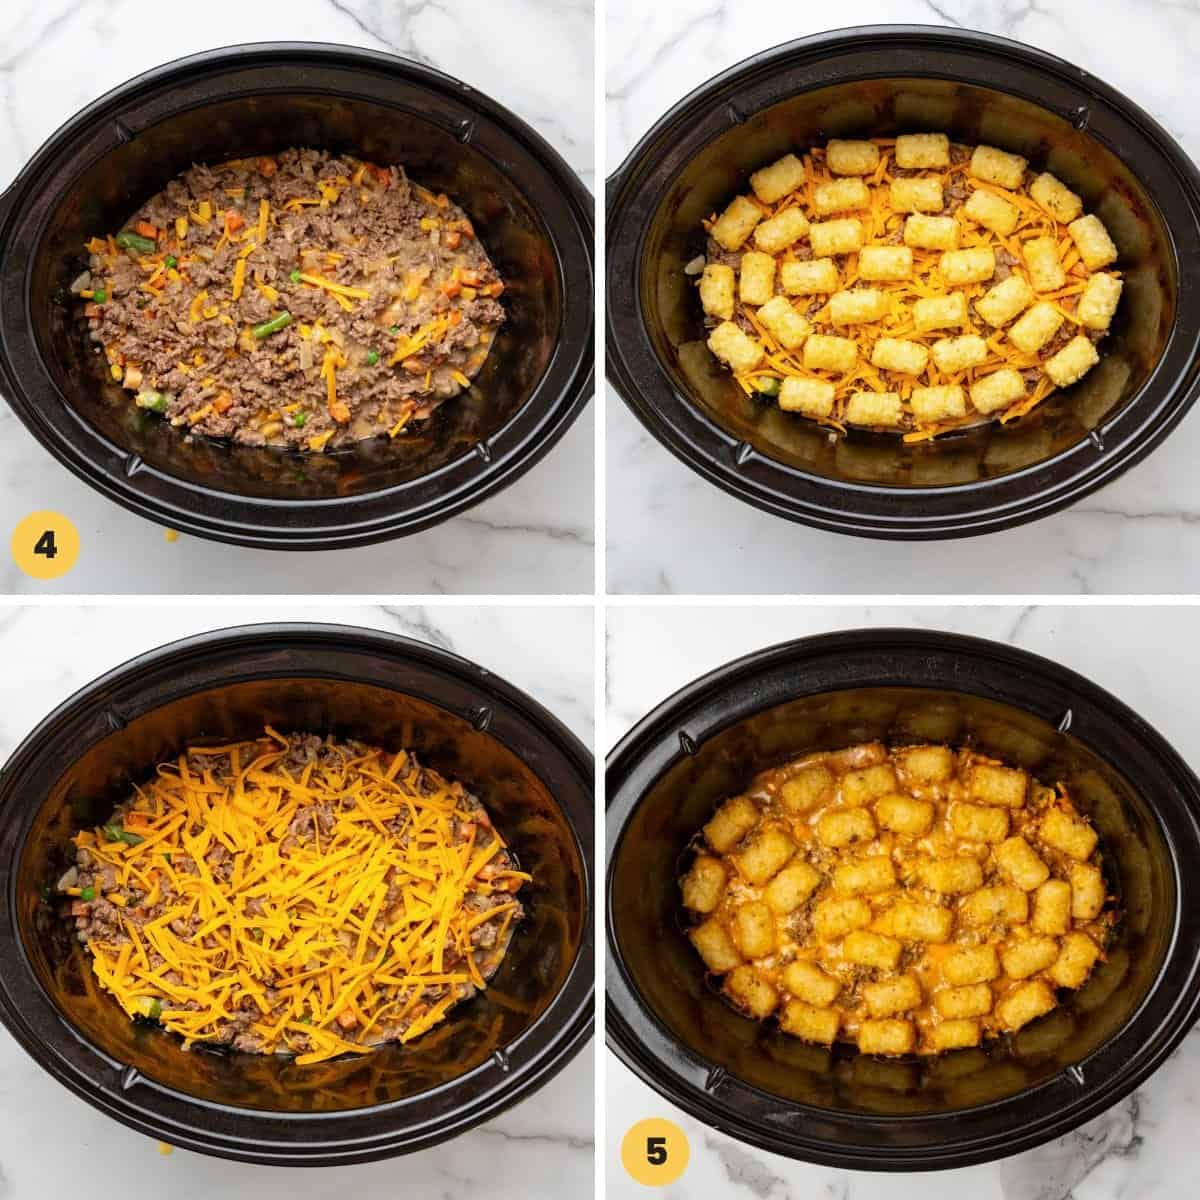 https://littlesunnykitchen.com/wp-content/uploads/2023/03/How-to-Make-Crock-Pot-Tater-Tot-Casserole-2.jpg